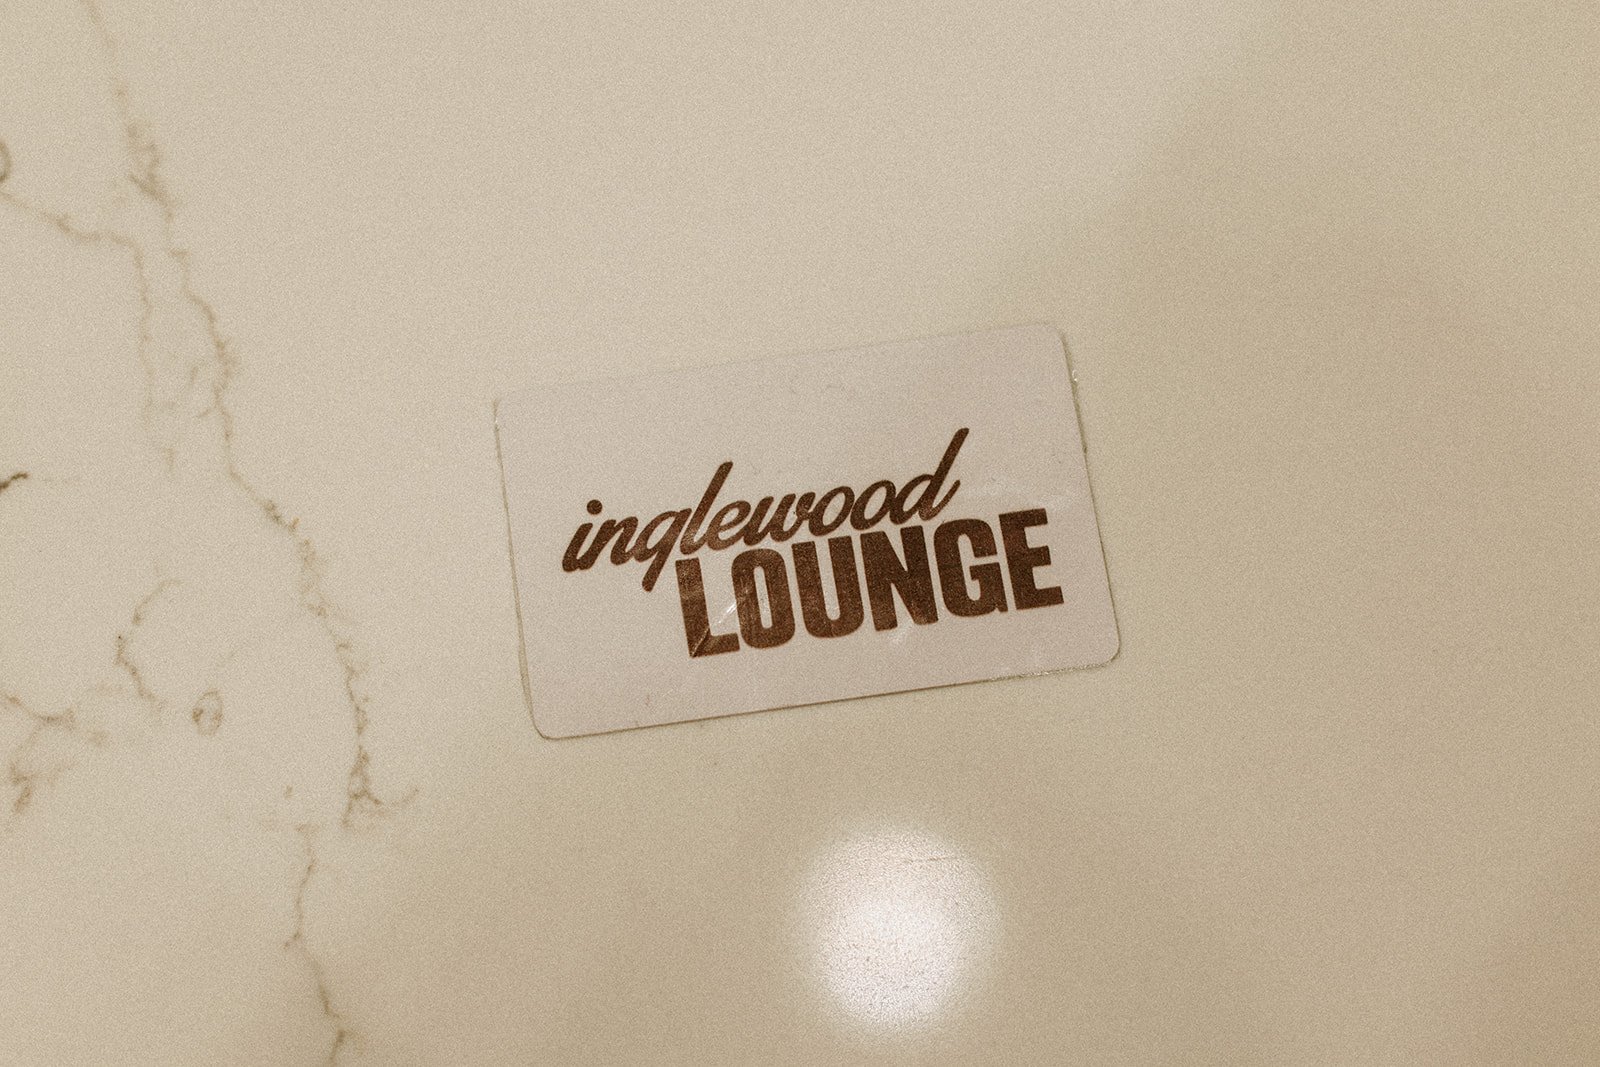 Inglewood Lounge